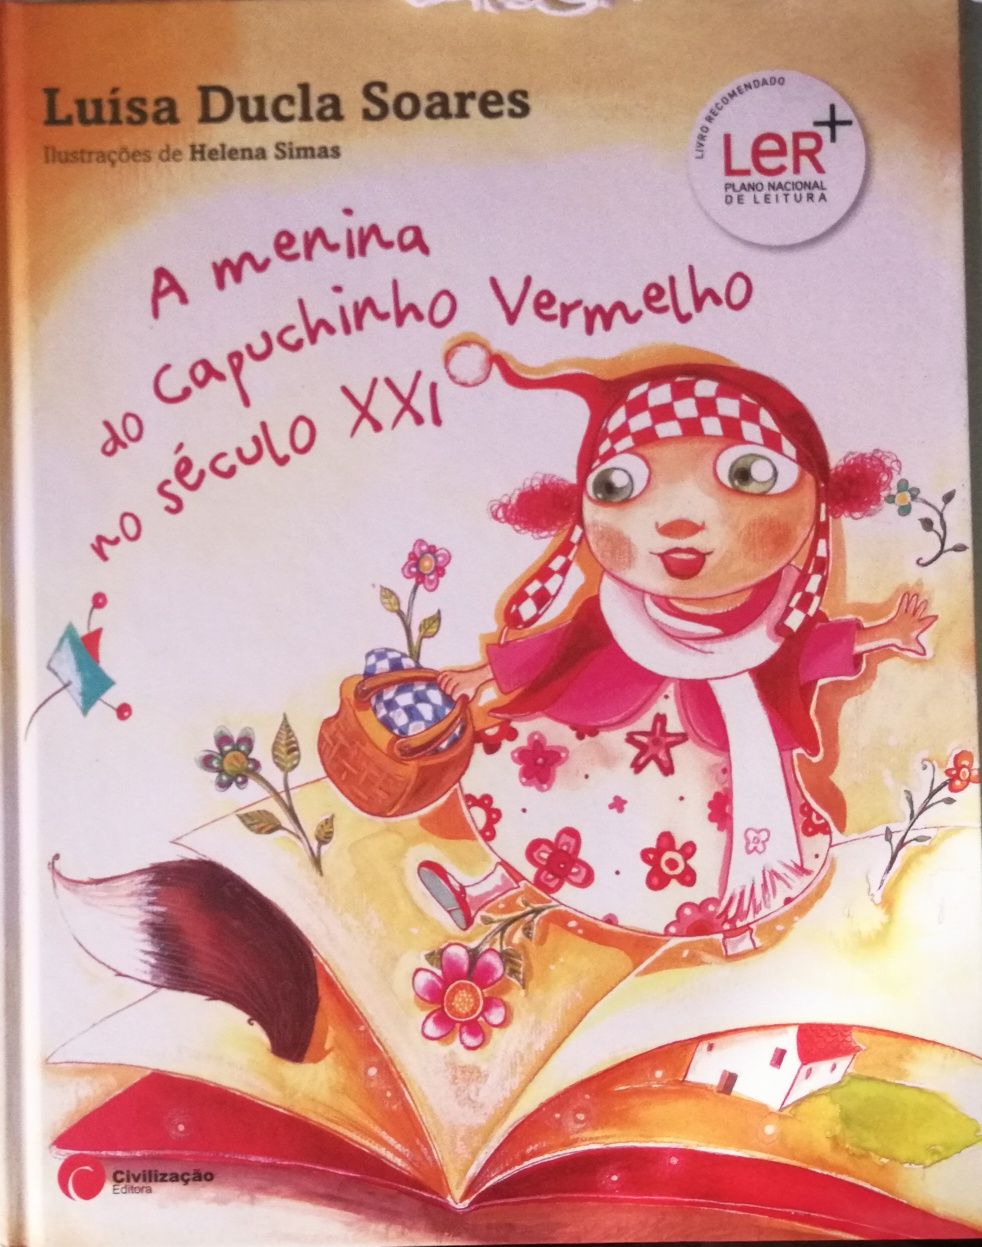 "A Menina do Capuchinho Vermelho no Século XXI", Luísa Ducla Soares